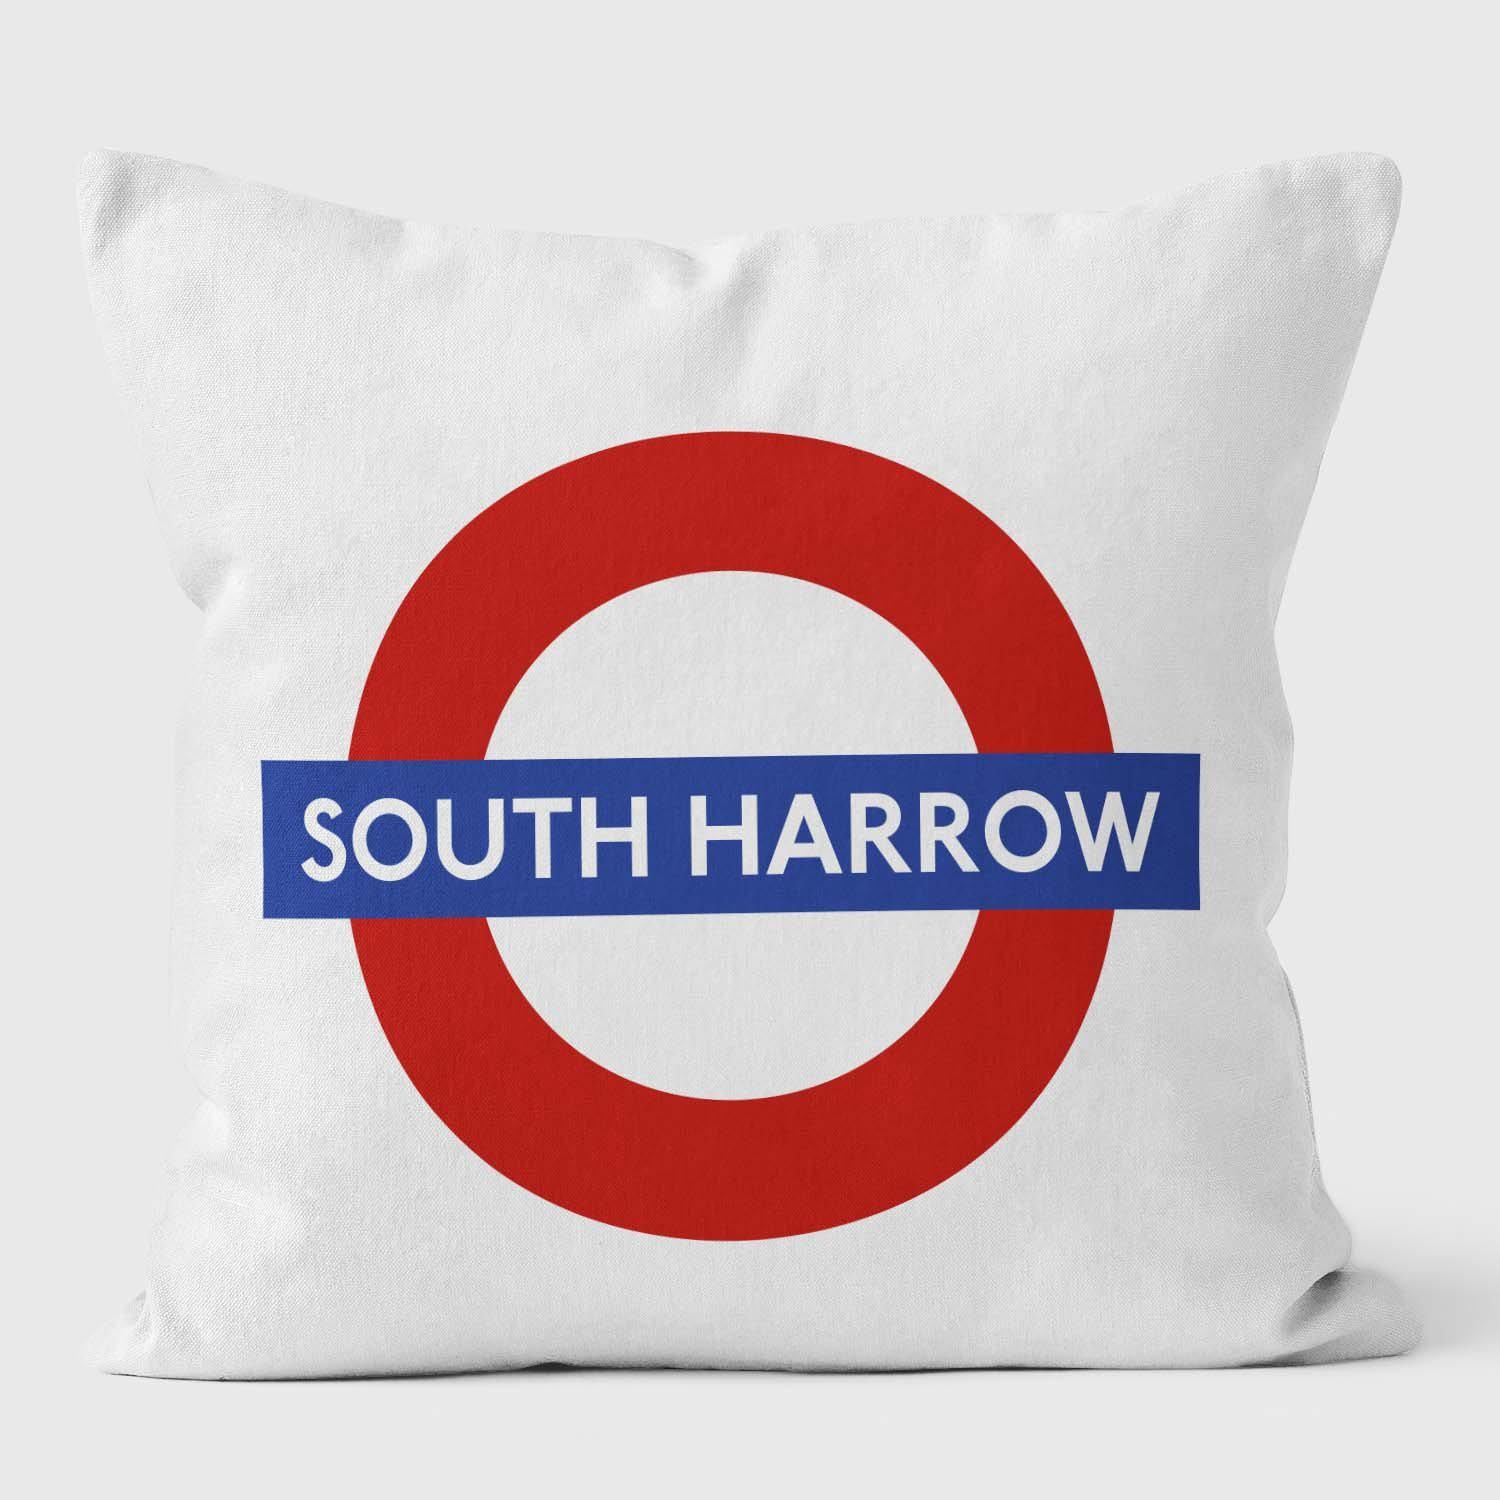 South Harrow London Underground Tube Station Roundel Cushion - Handmade Cushions UK - WeLoveCushions